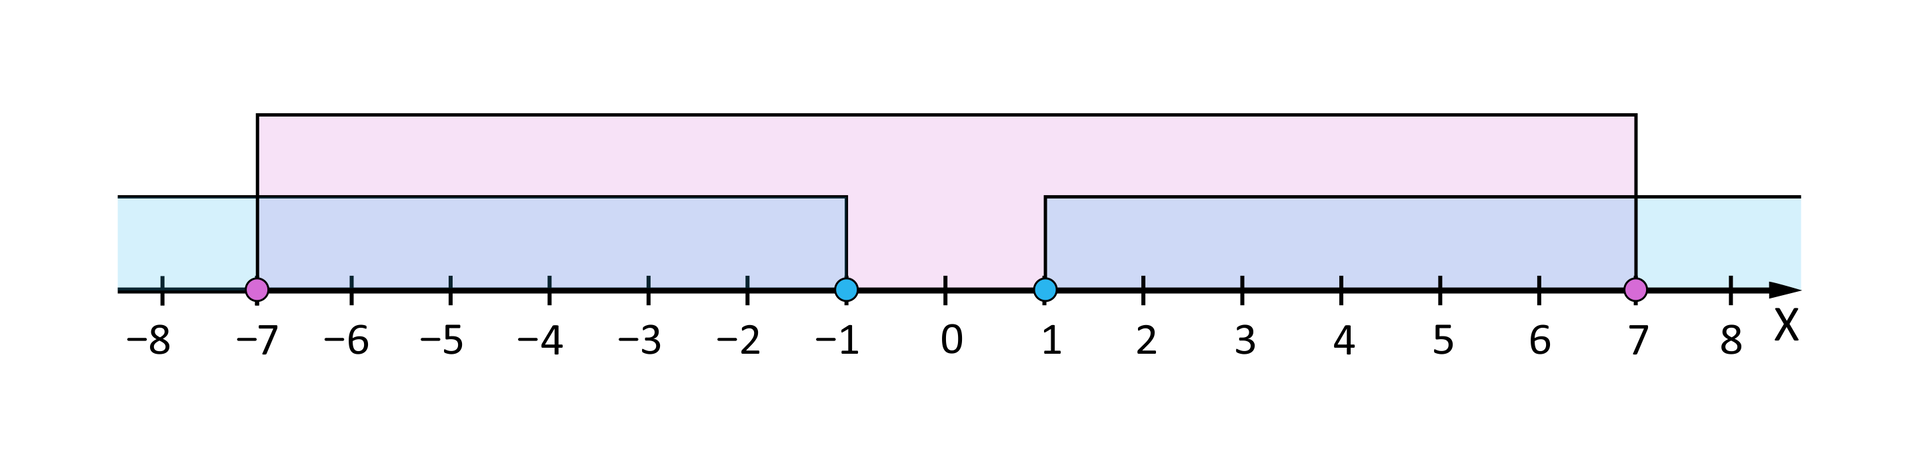 Ilustracja przedstawia poziomą oś X od minus 8 do 8. Na osi zaznaczone są następujące przedziały: pierwszy prawostronnie domknięty od minus nieskończoności do minus 1. Drugi obustronnie domknięty od minus 7 do 7.  Trzeci lewostronnie domknięty od 1 do plus nieskończoności.